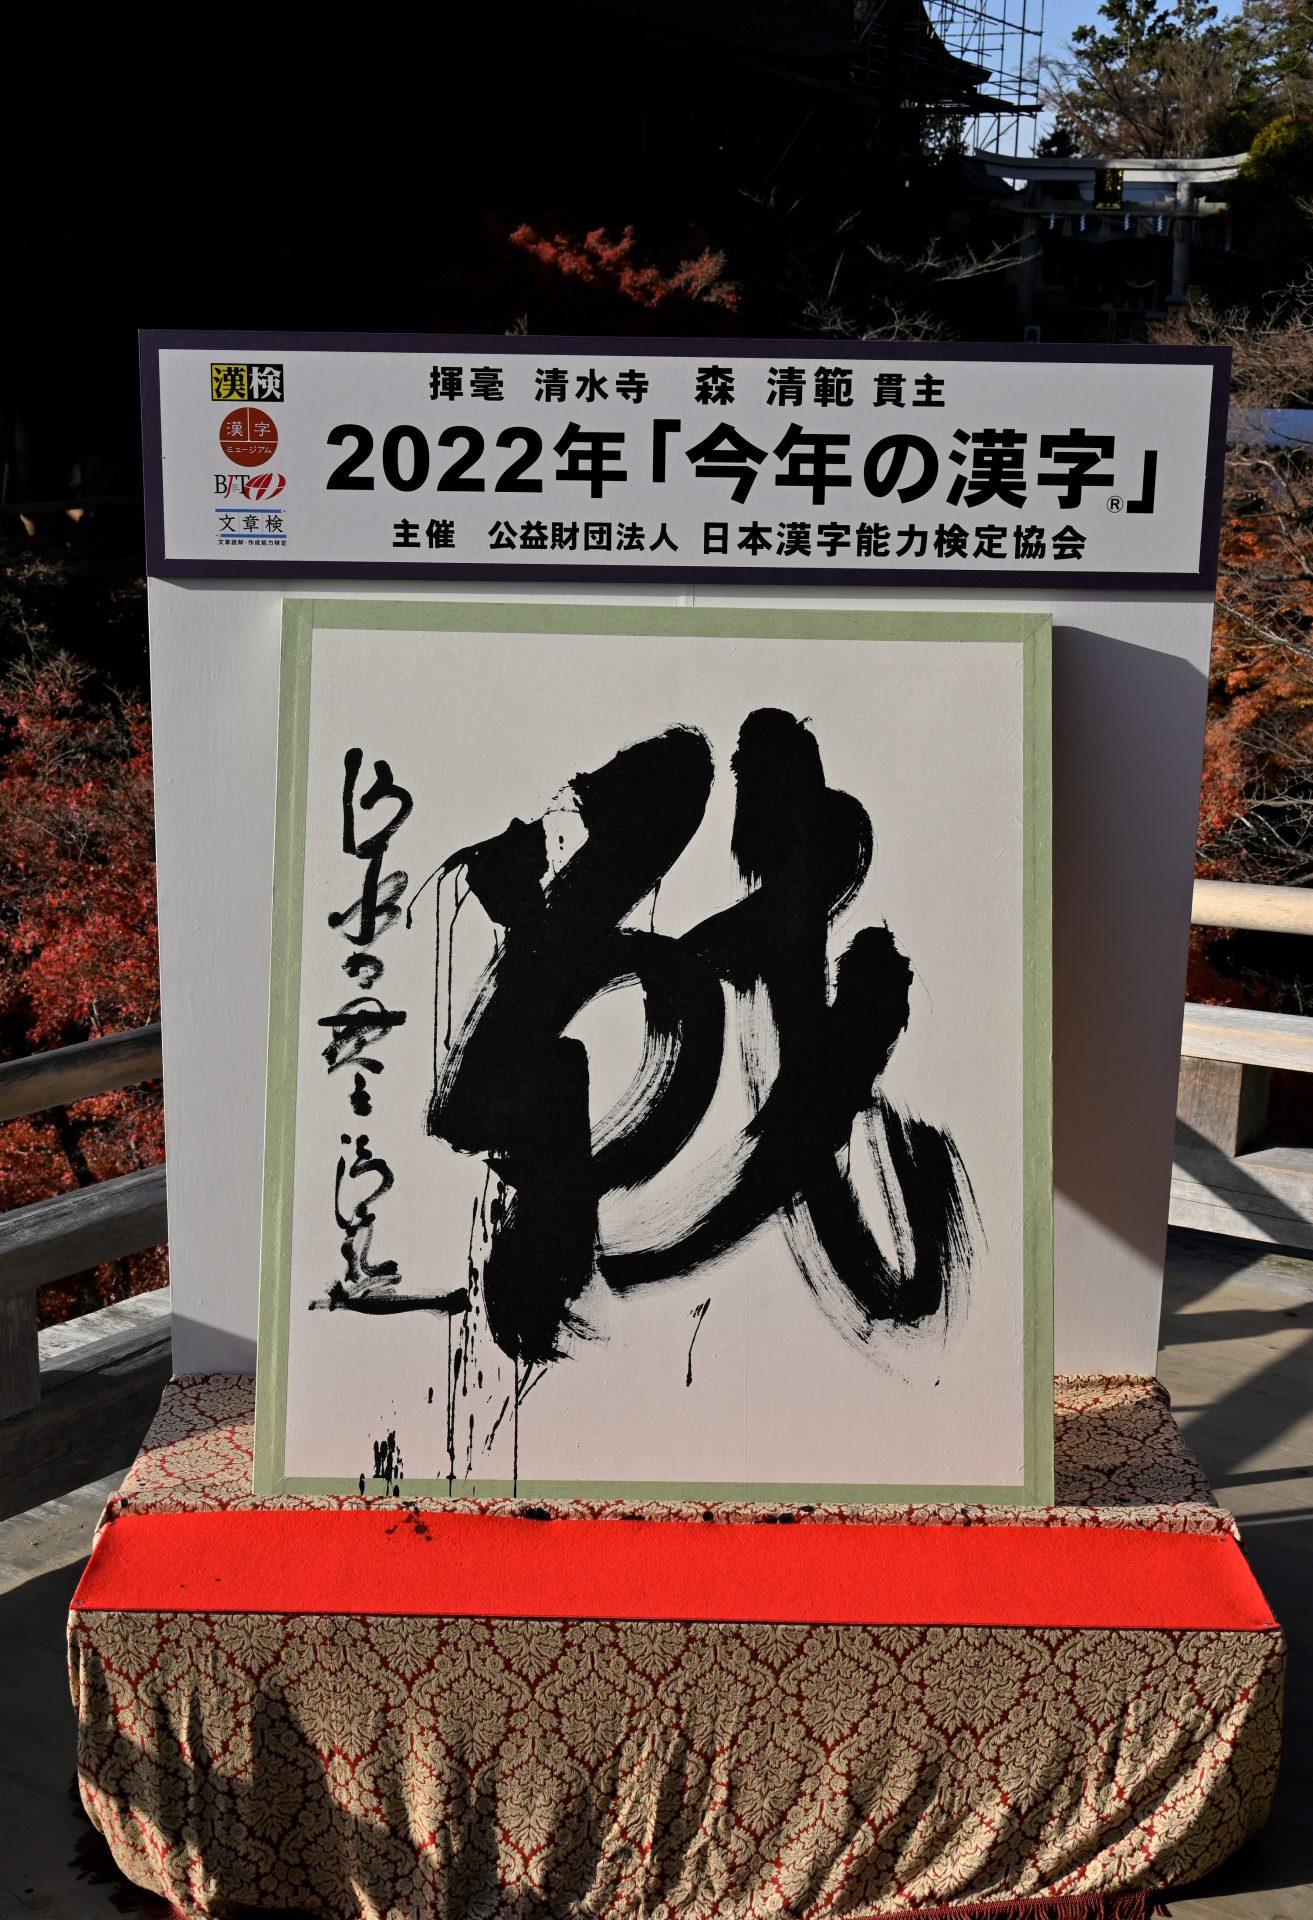 2022年「今年の漢字」に思う『戦』～必ず終わりがくると信じて 日本